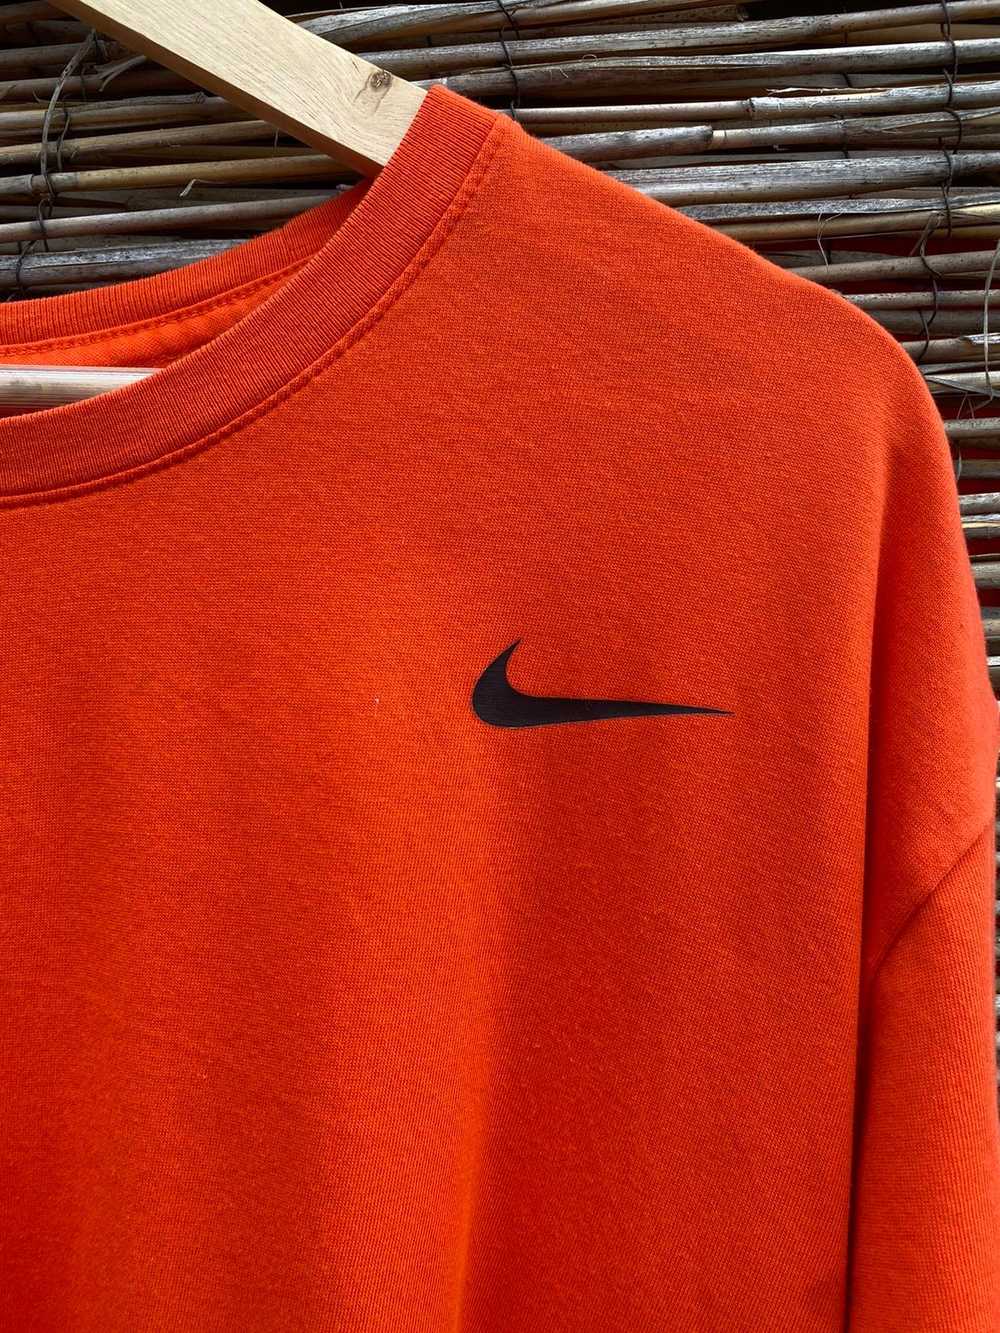 Nike Nike Dri-fit T-shirt - image 2